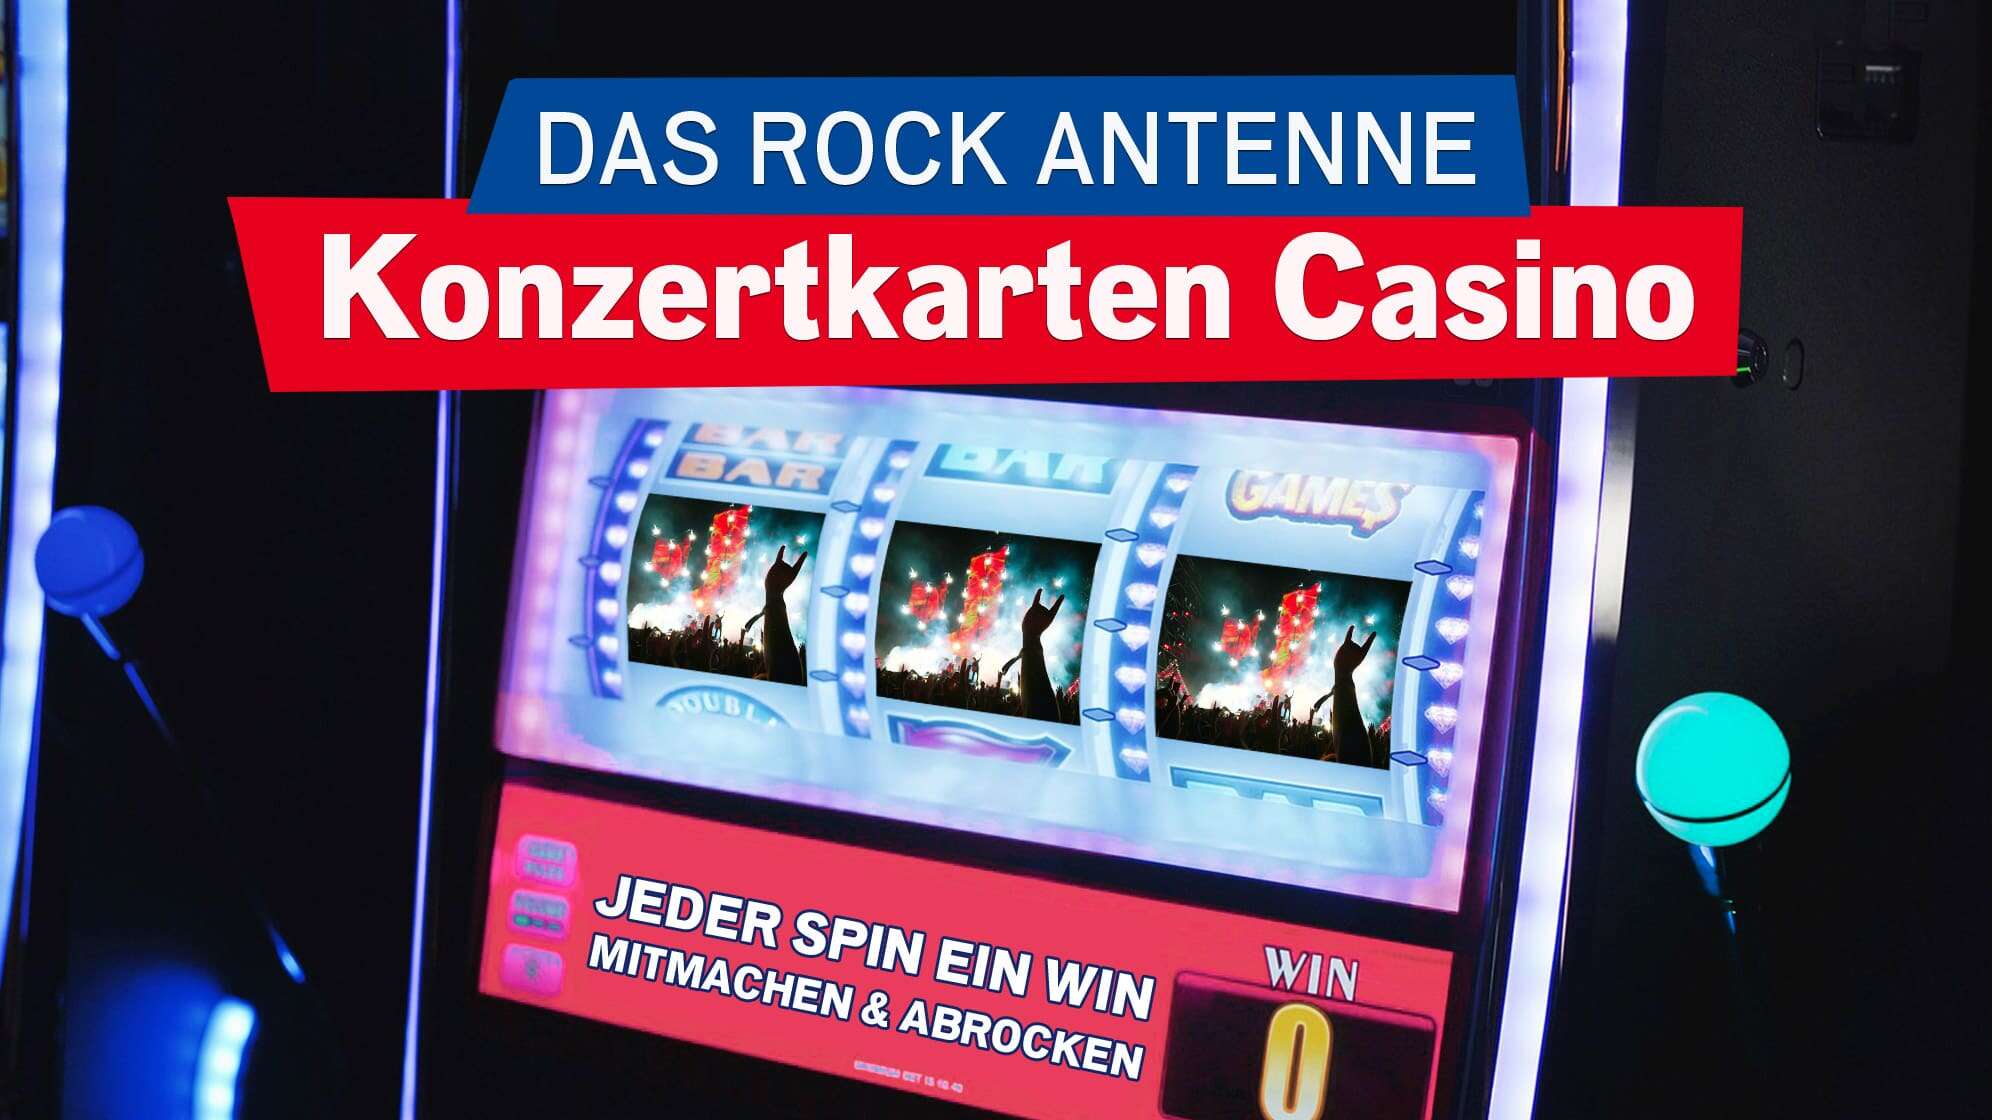 Nahaufnahme des Bildschirms eines Spielautomaten, darauf zu sehen sind drei Fotos von einem Konzert in einer Reihe, dazu der Text: Das ROCK ANTENNE Konzertkarten Casino - jeder Spin ein Win - mitmachen & abrocken